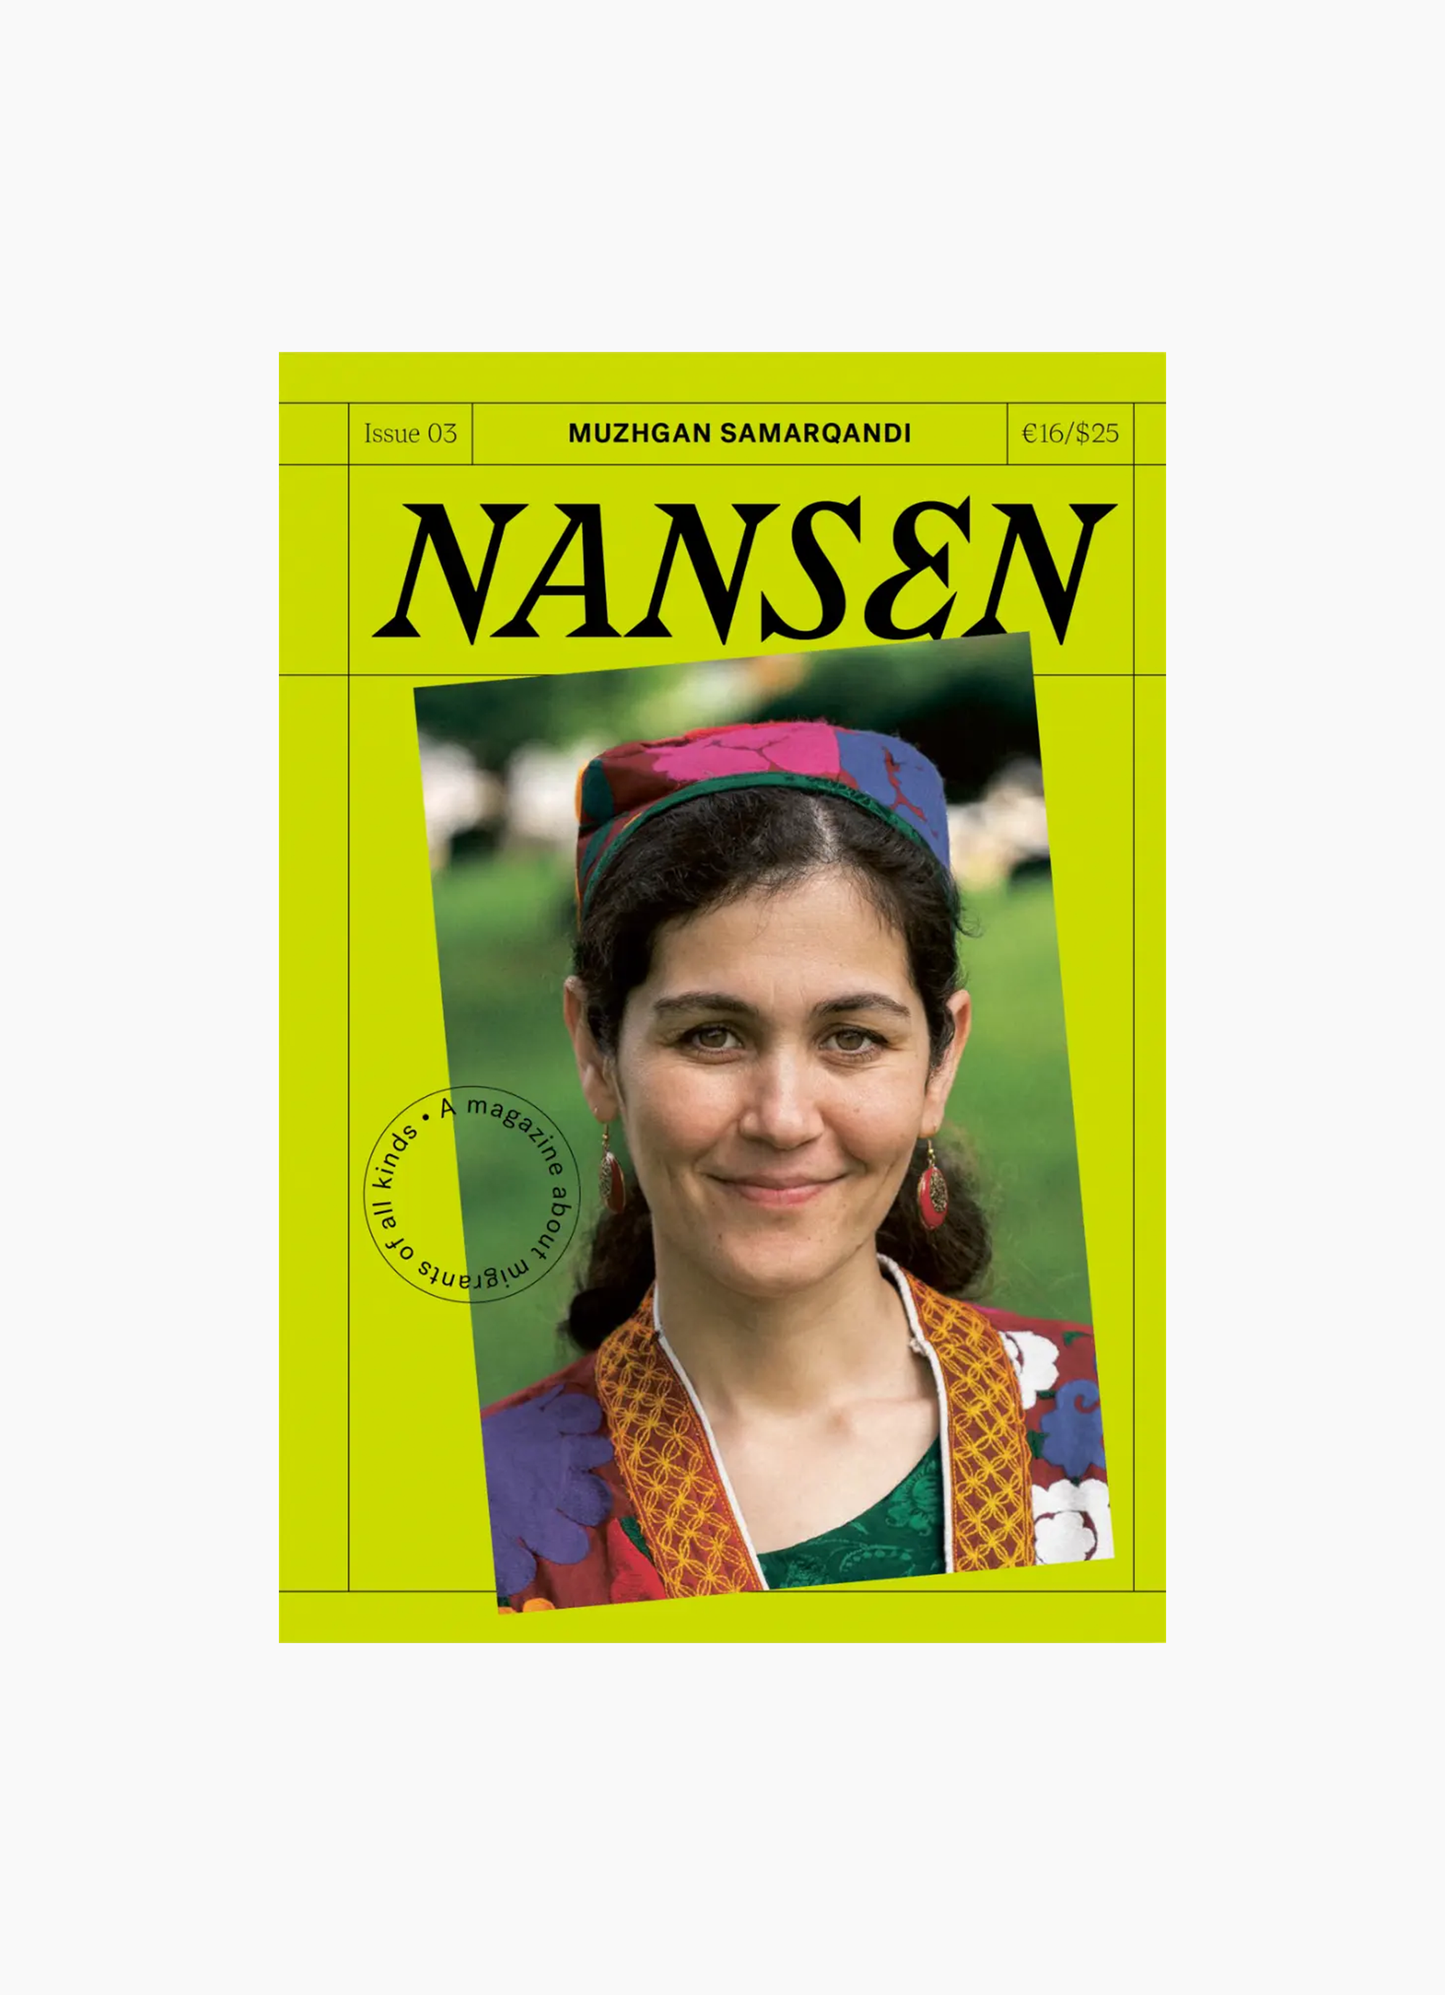 Nansen, Issue 03